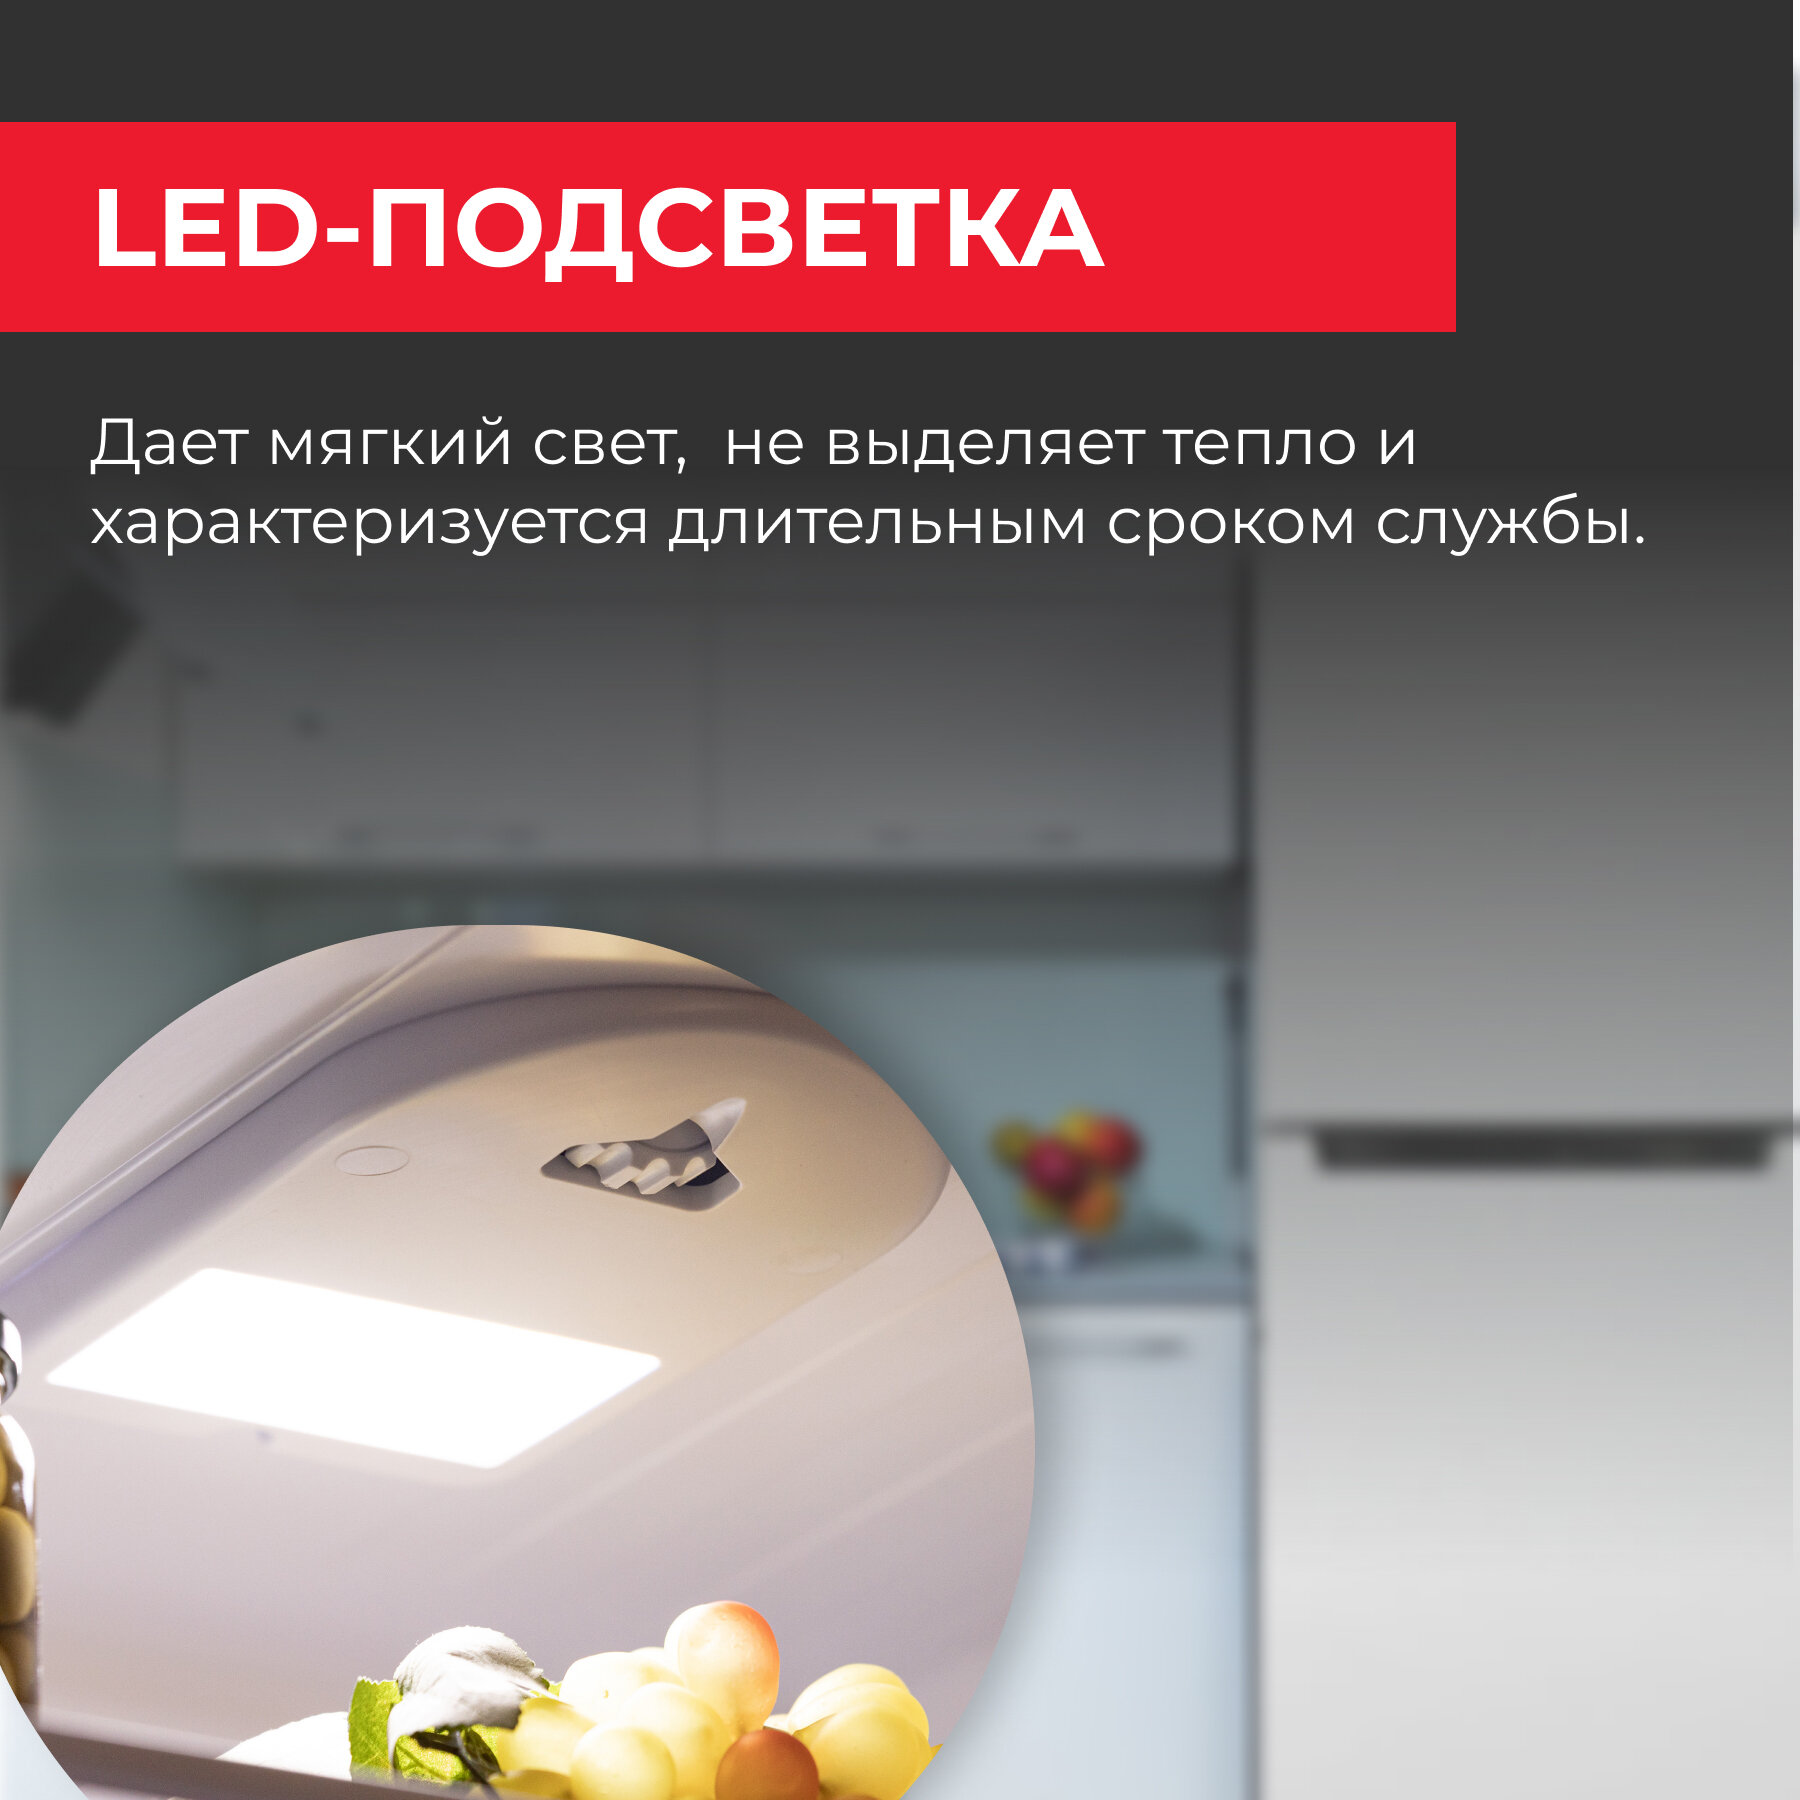 Холодильник NEKO FRB 180